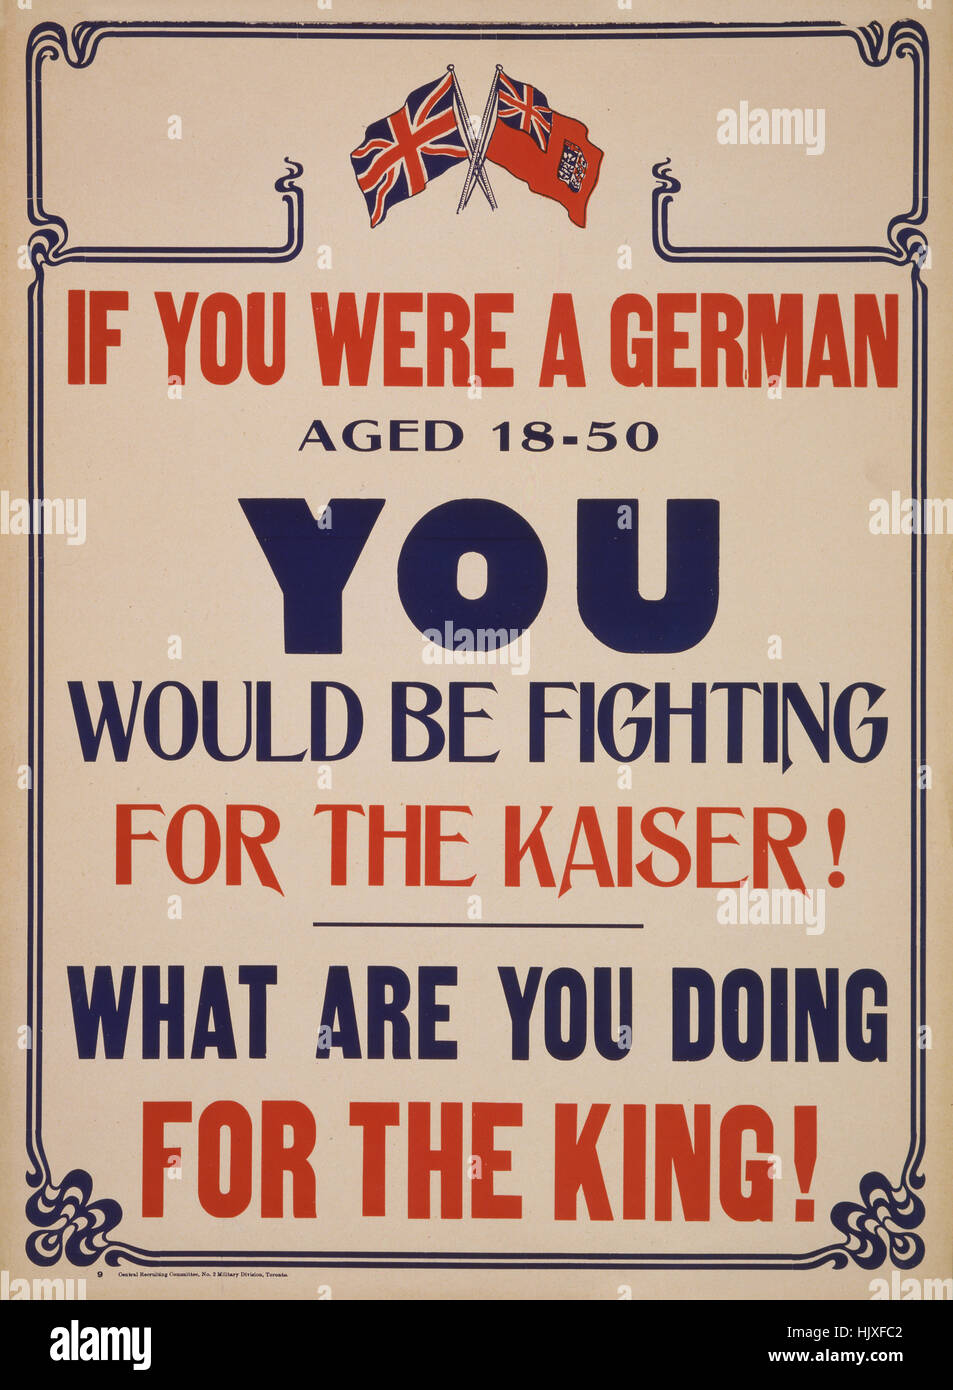 "Si vous étiez un Allemand âgés de 18 à 50 vous serait la lutte pour le Kaiser ! Que faites-vous pour votre Roi !', la Première Guerre mondiale, le Canada affiche de recrutement, 1917 Banque D'Images